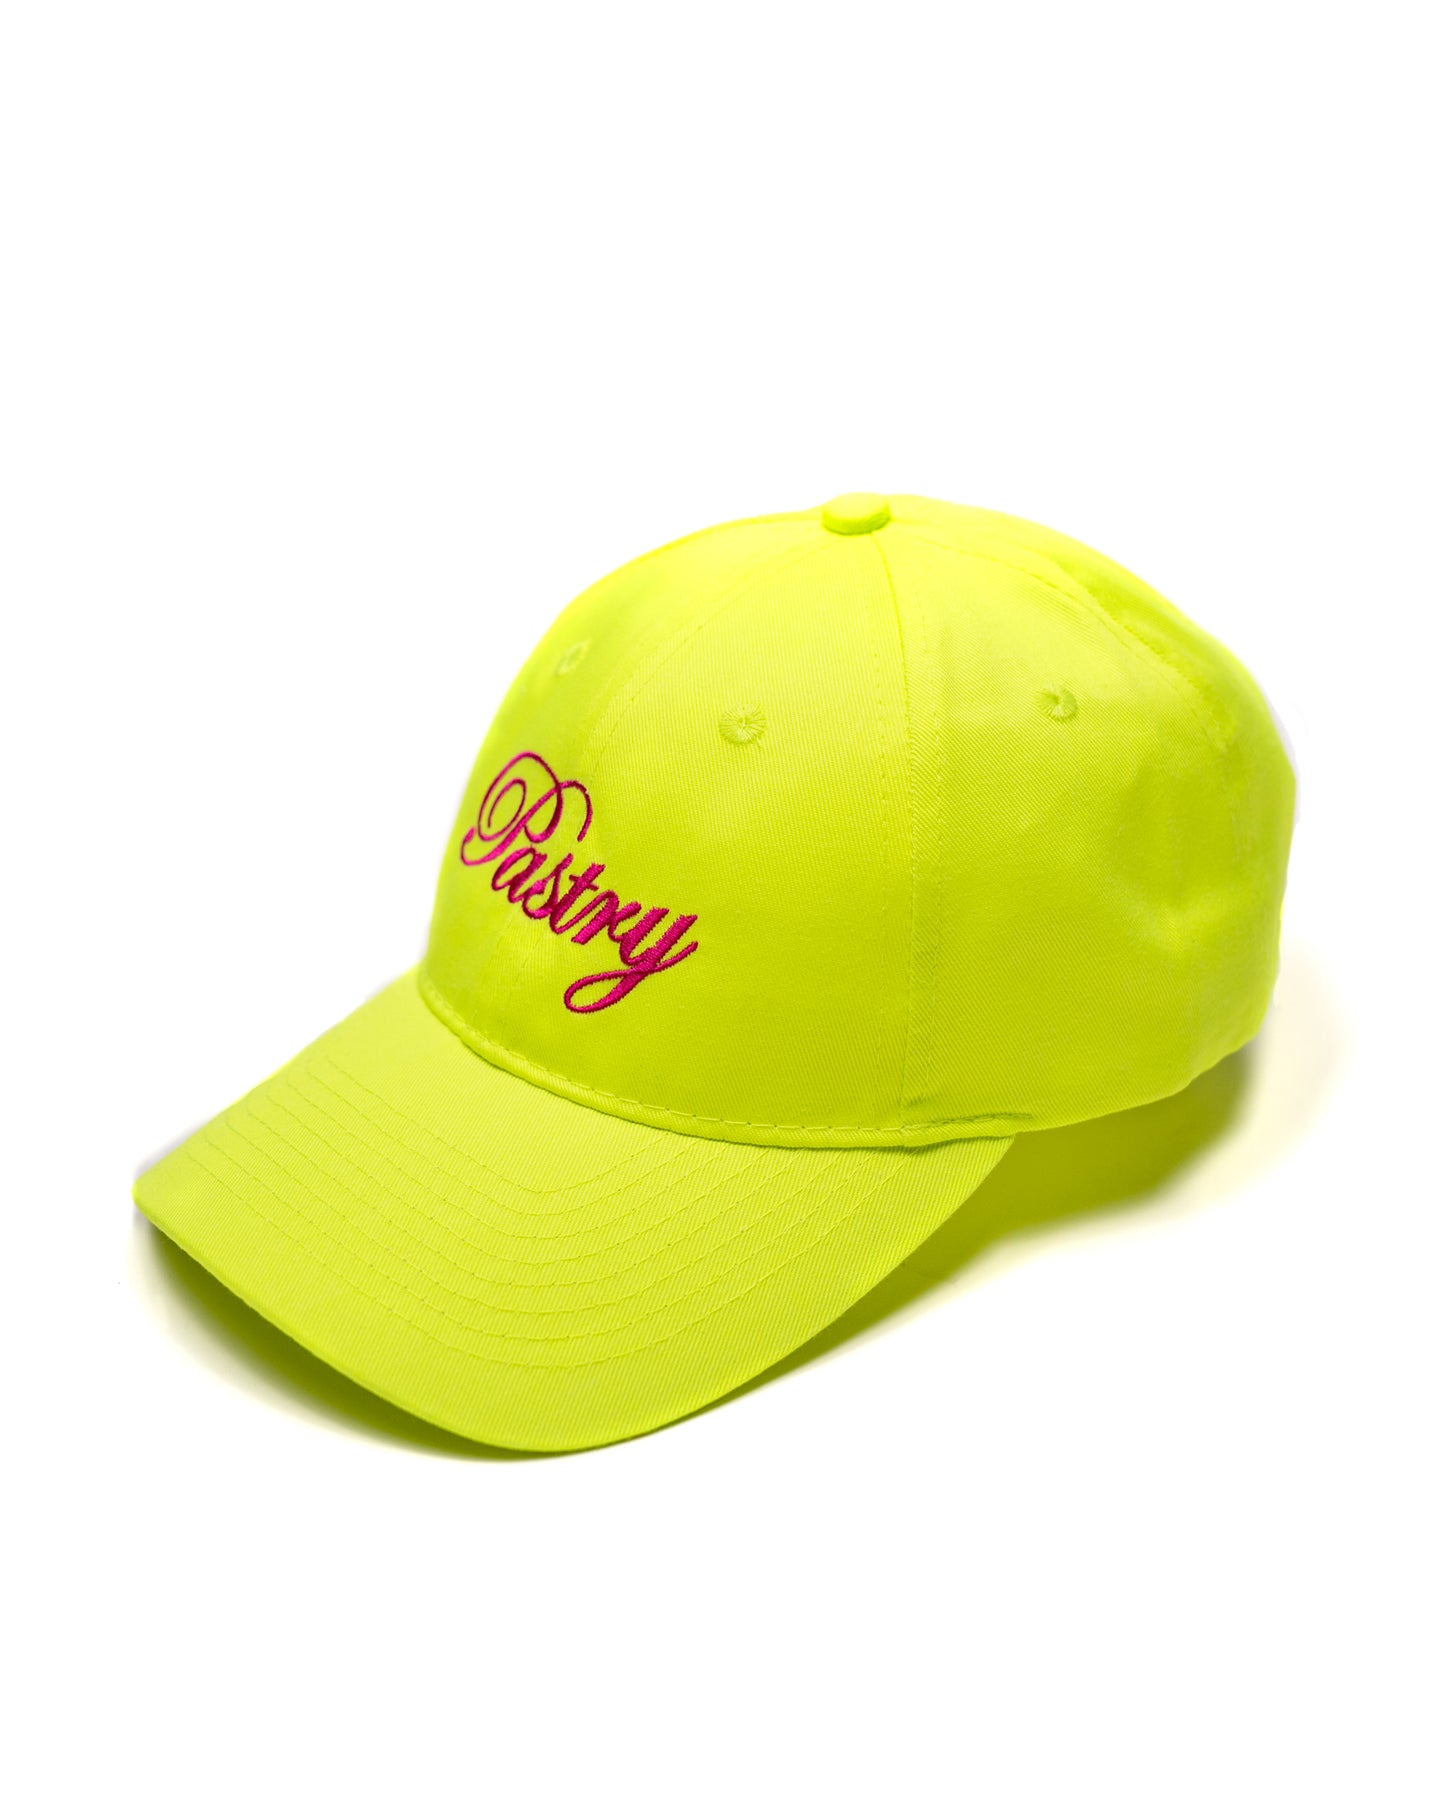 Neon Yellow Pastry Cap